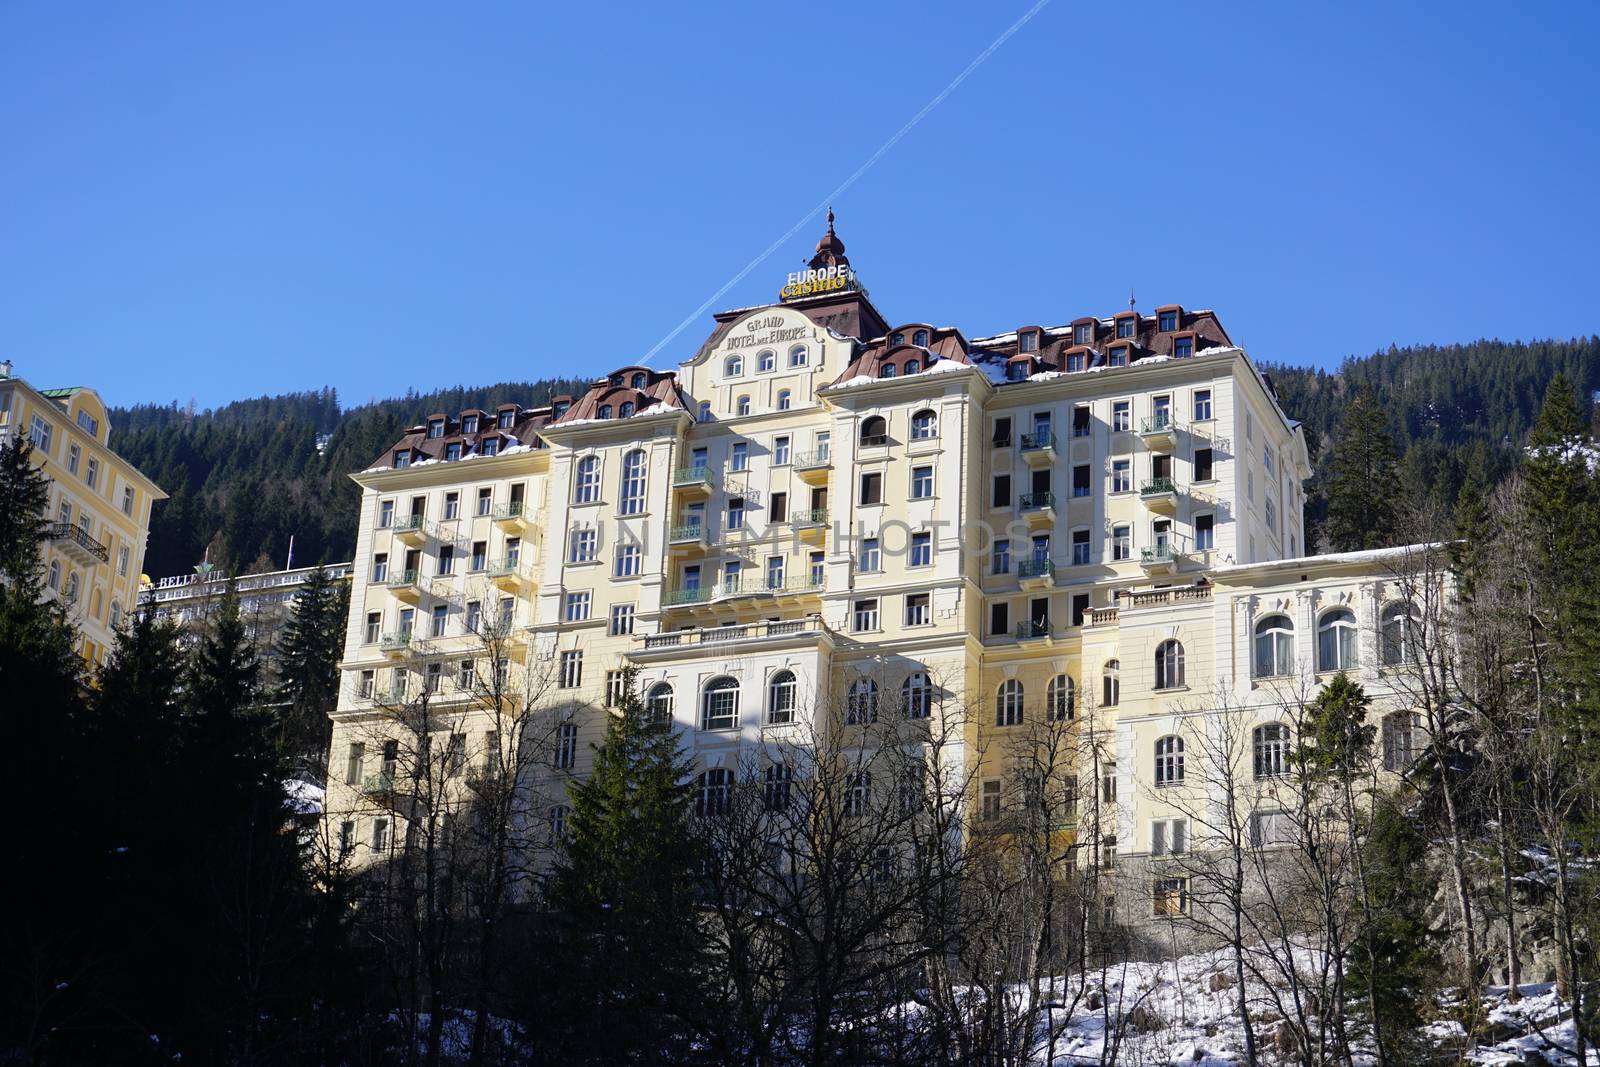 Gastein hotel, Bad Gastein, Austria by vlad-m